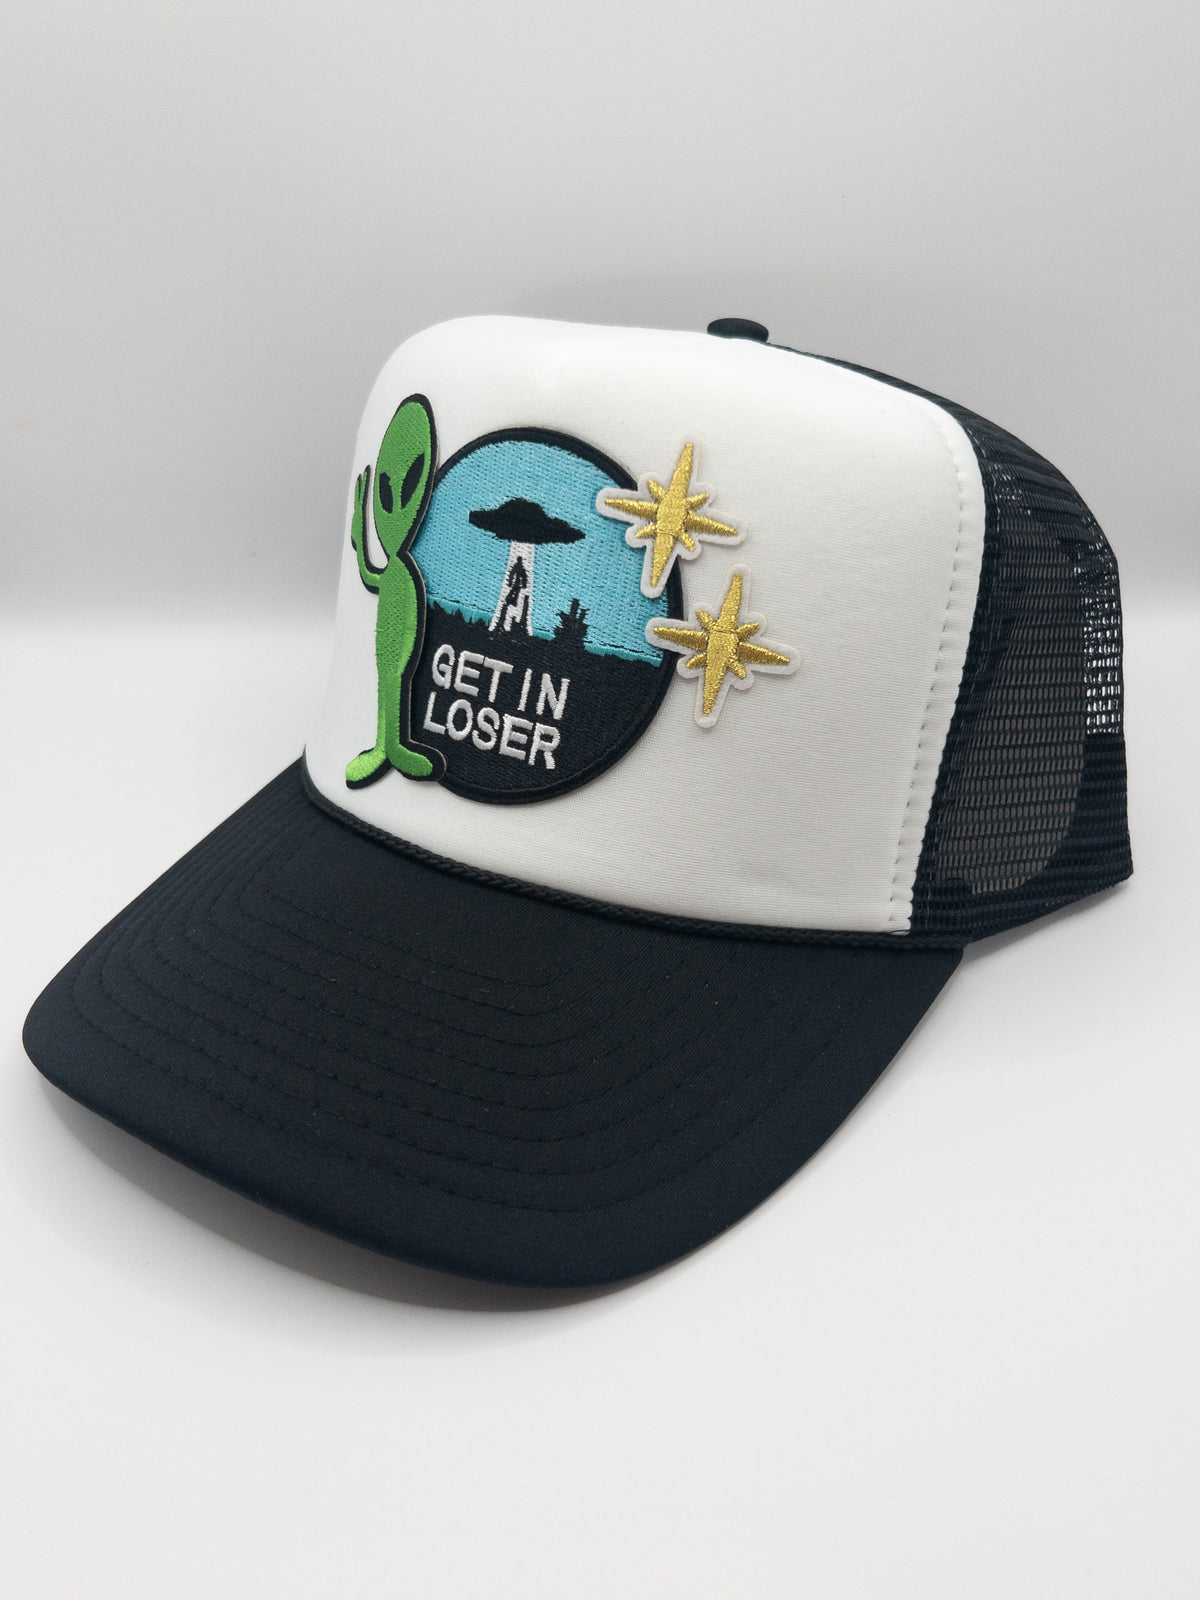 Get In Loser Alien Hat | Patch Trucker Hat | Trendy Trucker Hats Hats TheFringeCultureCollective